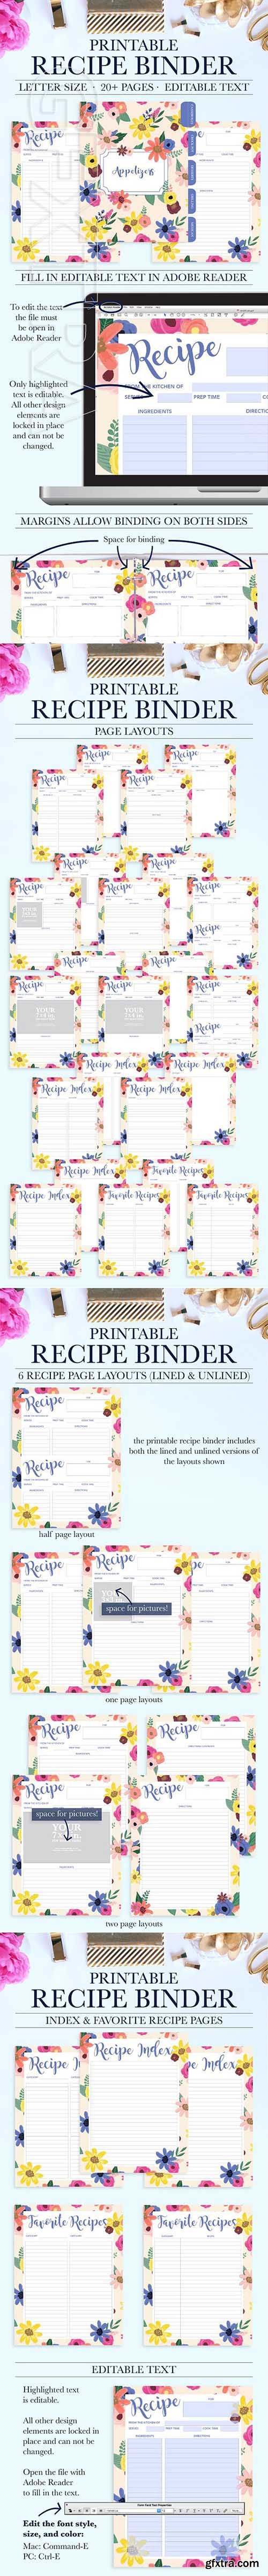 CreativeMarket - Recipe Binder Printable Kit 2050840